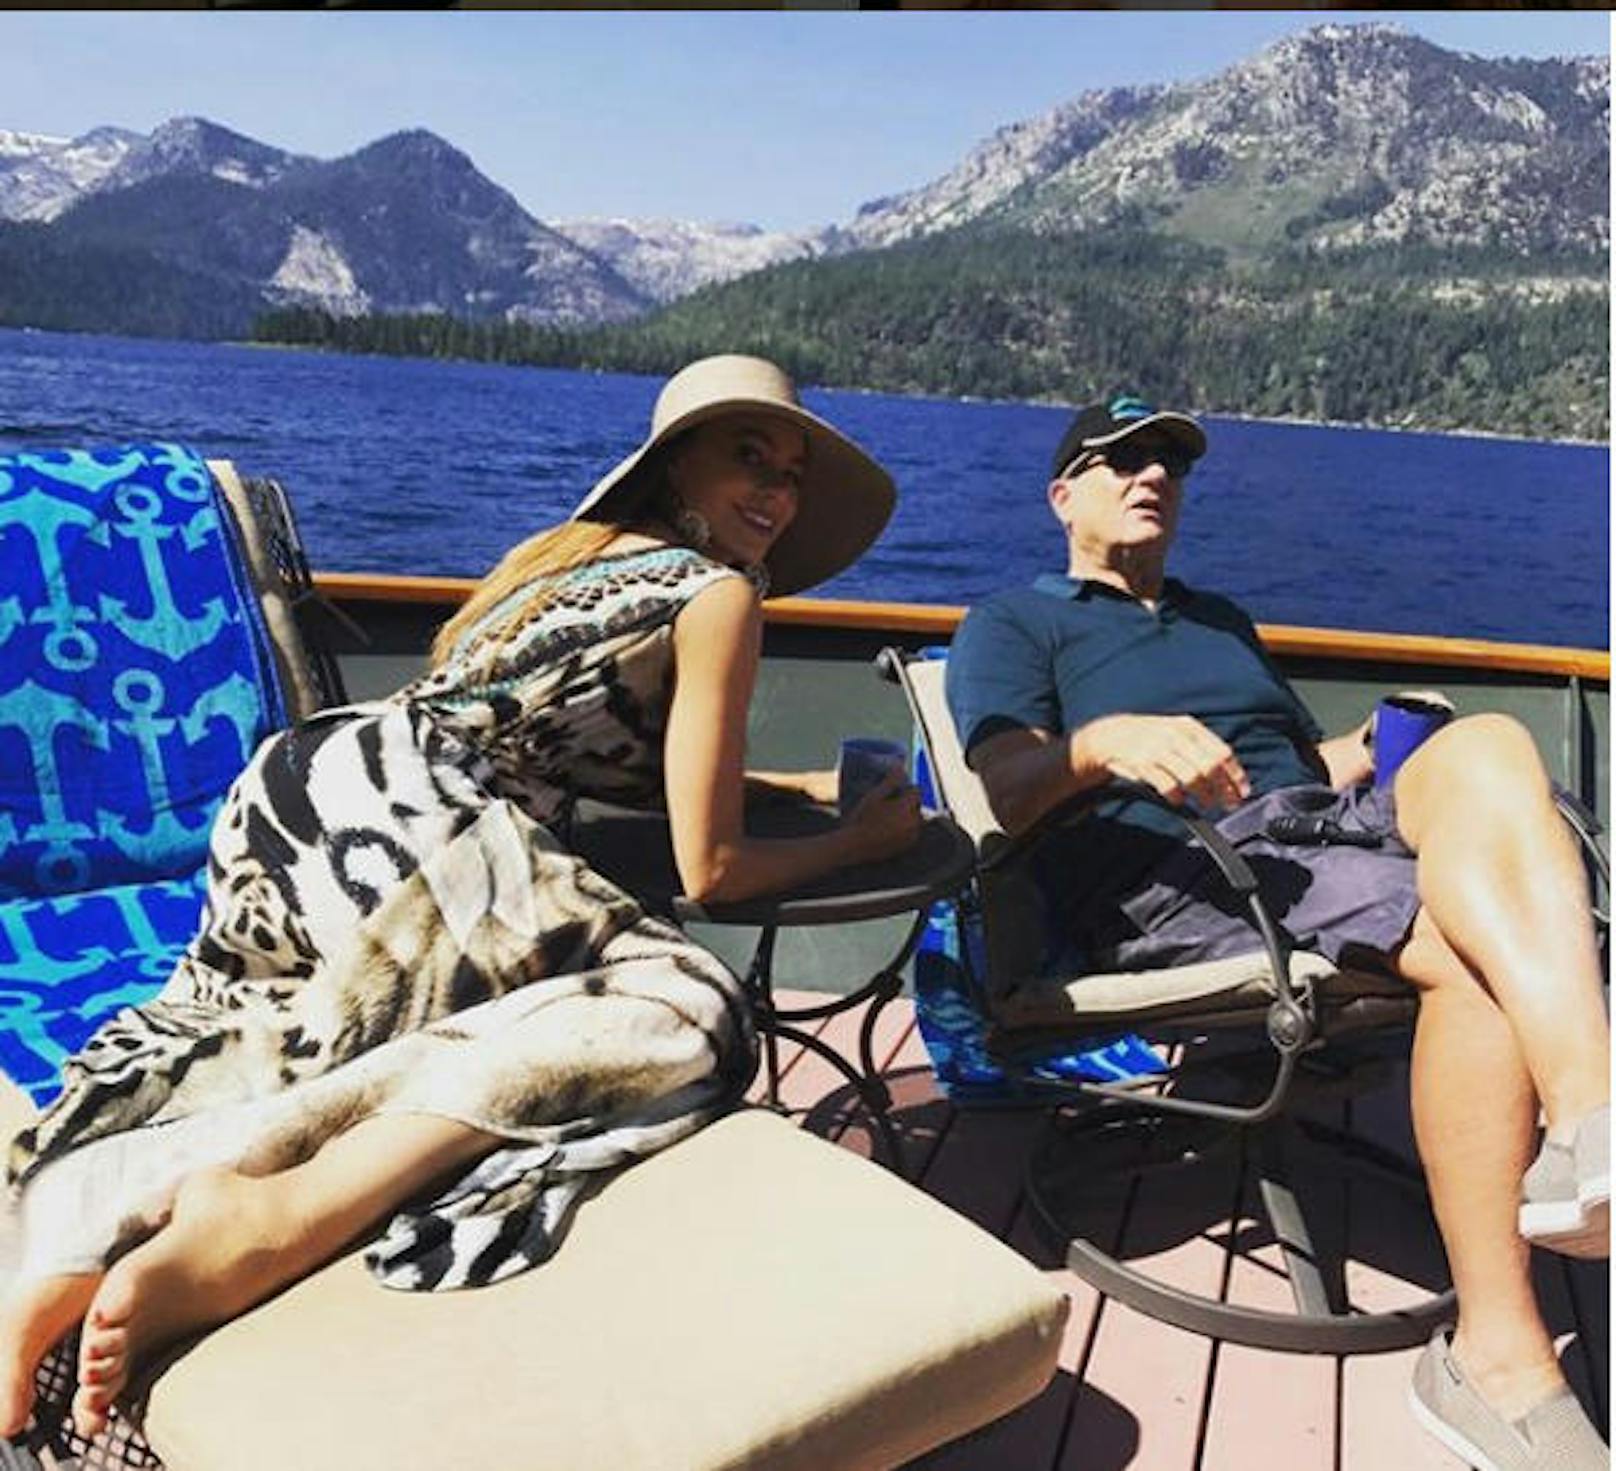 27.08.2017: Schauspielerin Sofia Vergara postete auf Instagram ein Bild vor Traumkulisse. "Schaut aus, als wären wir auf Urlaub. Sind wir aber nicht", schrieb sie dazu. Gemeinsam mit Serienpartner Ed O'Neill fiebert sie der Premiere der neuen "Modern Family"-Staffel entgegen.